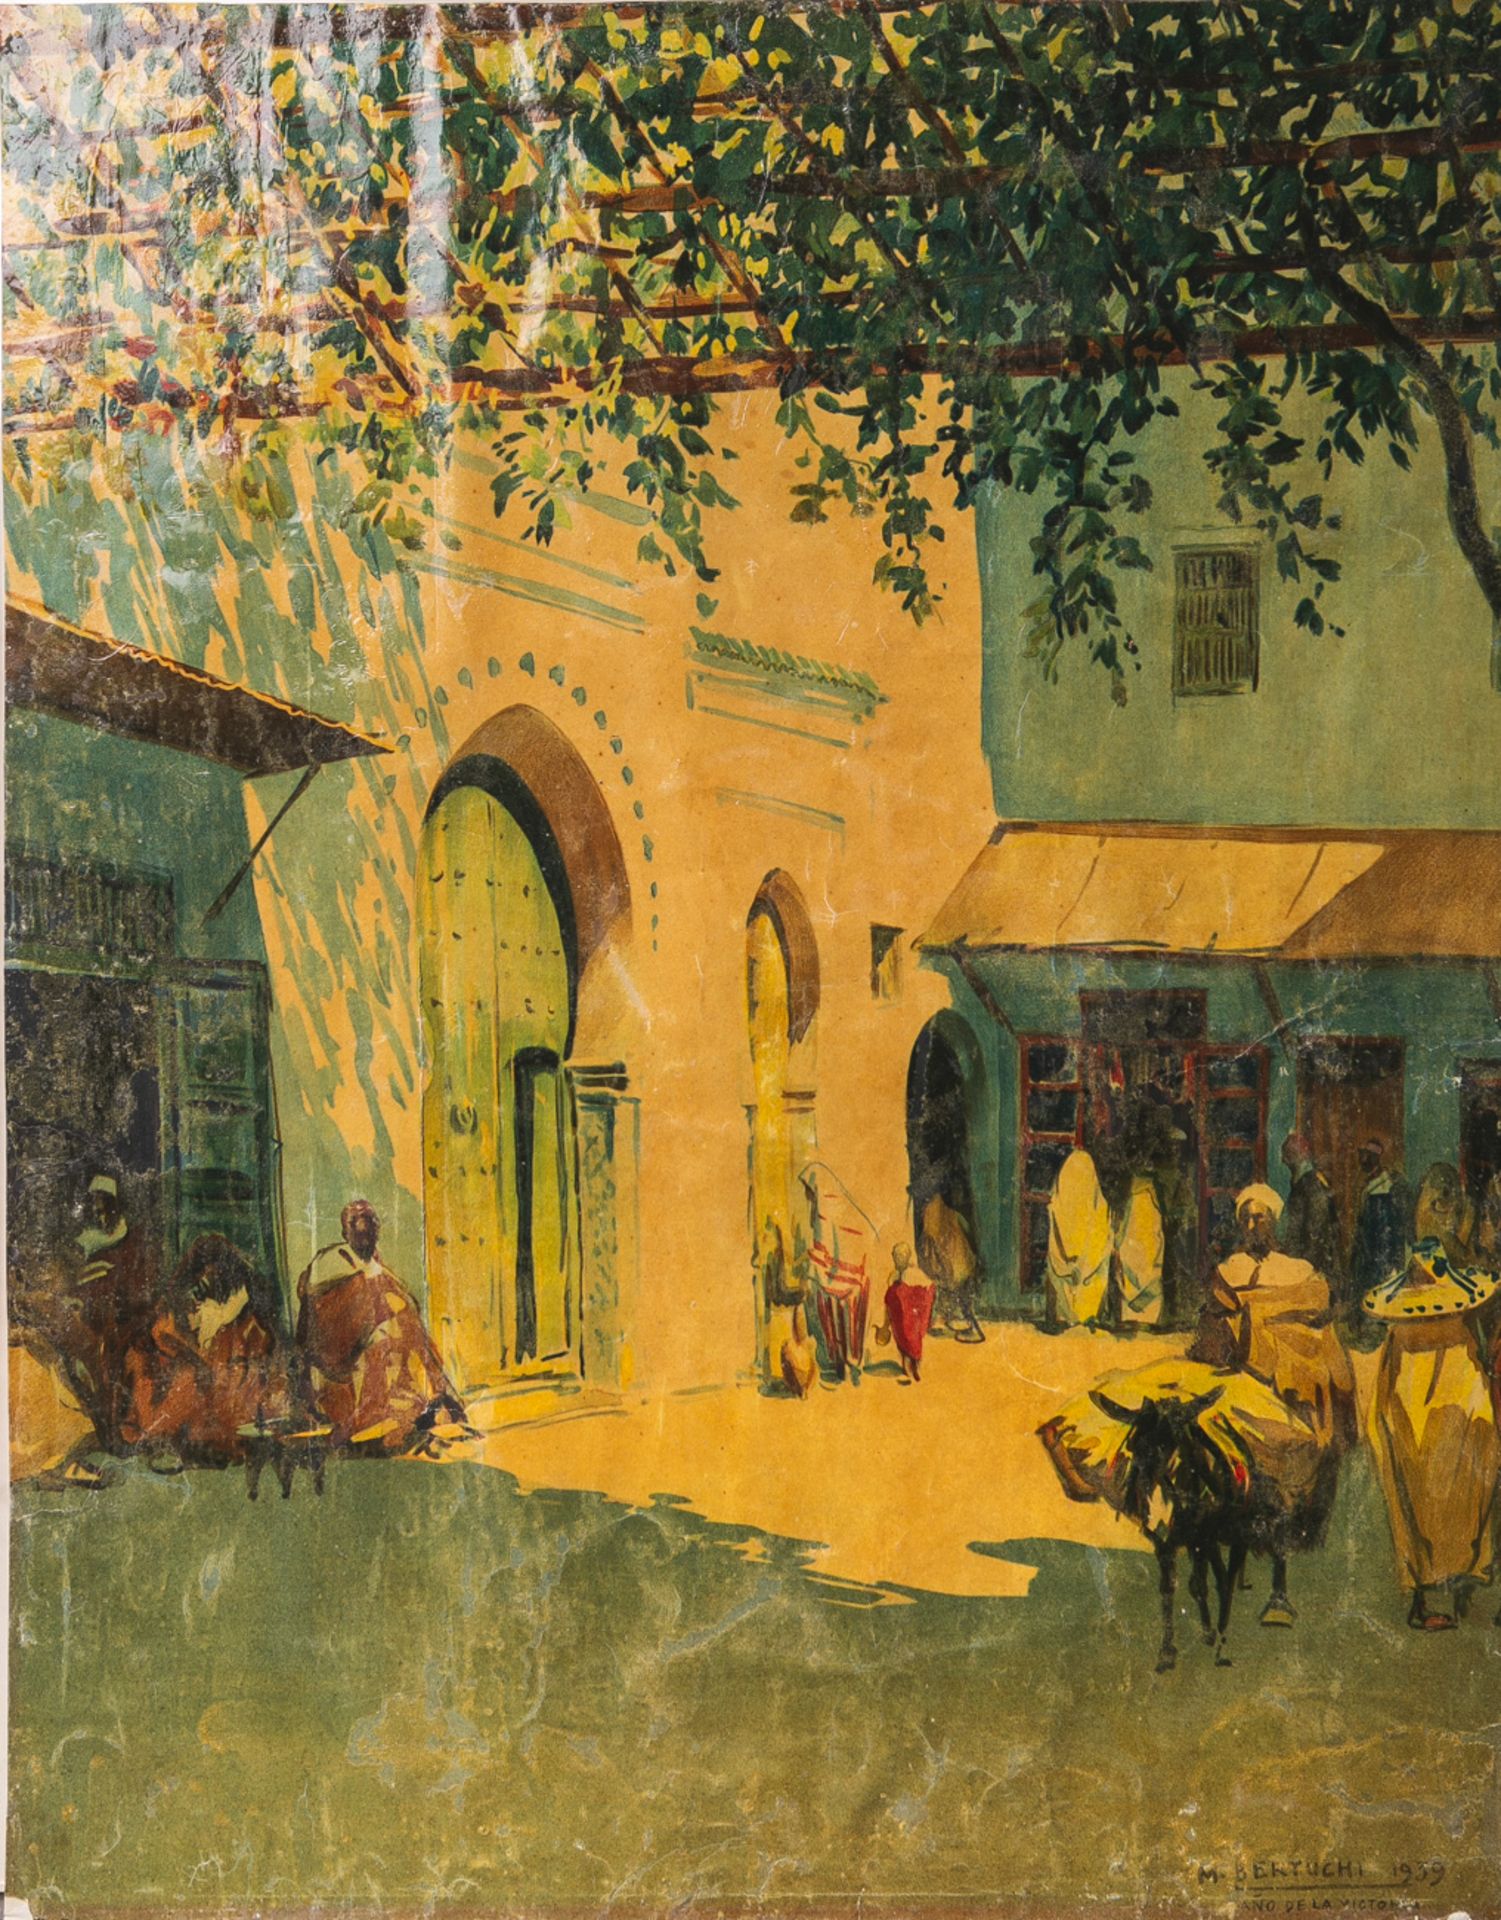 Nach Mariano Bertuchi (1884 - 1955), Marktdarstellung wohl in Marokko, Multiple/Papier,